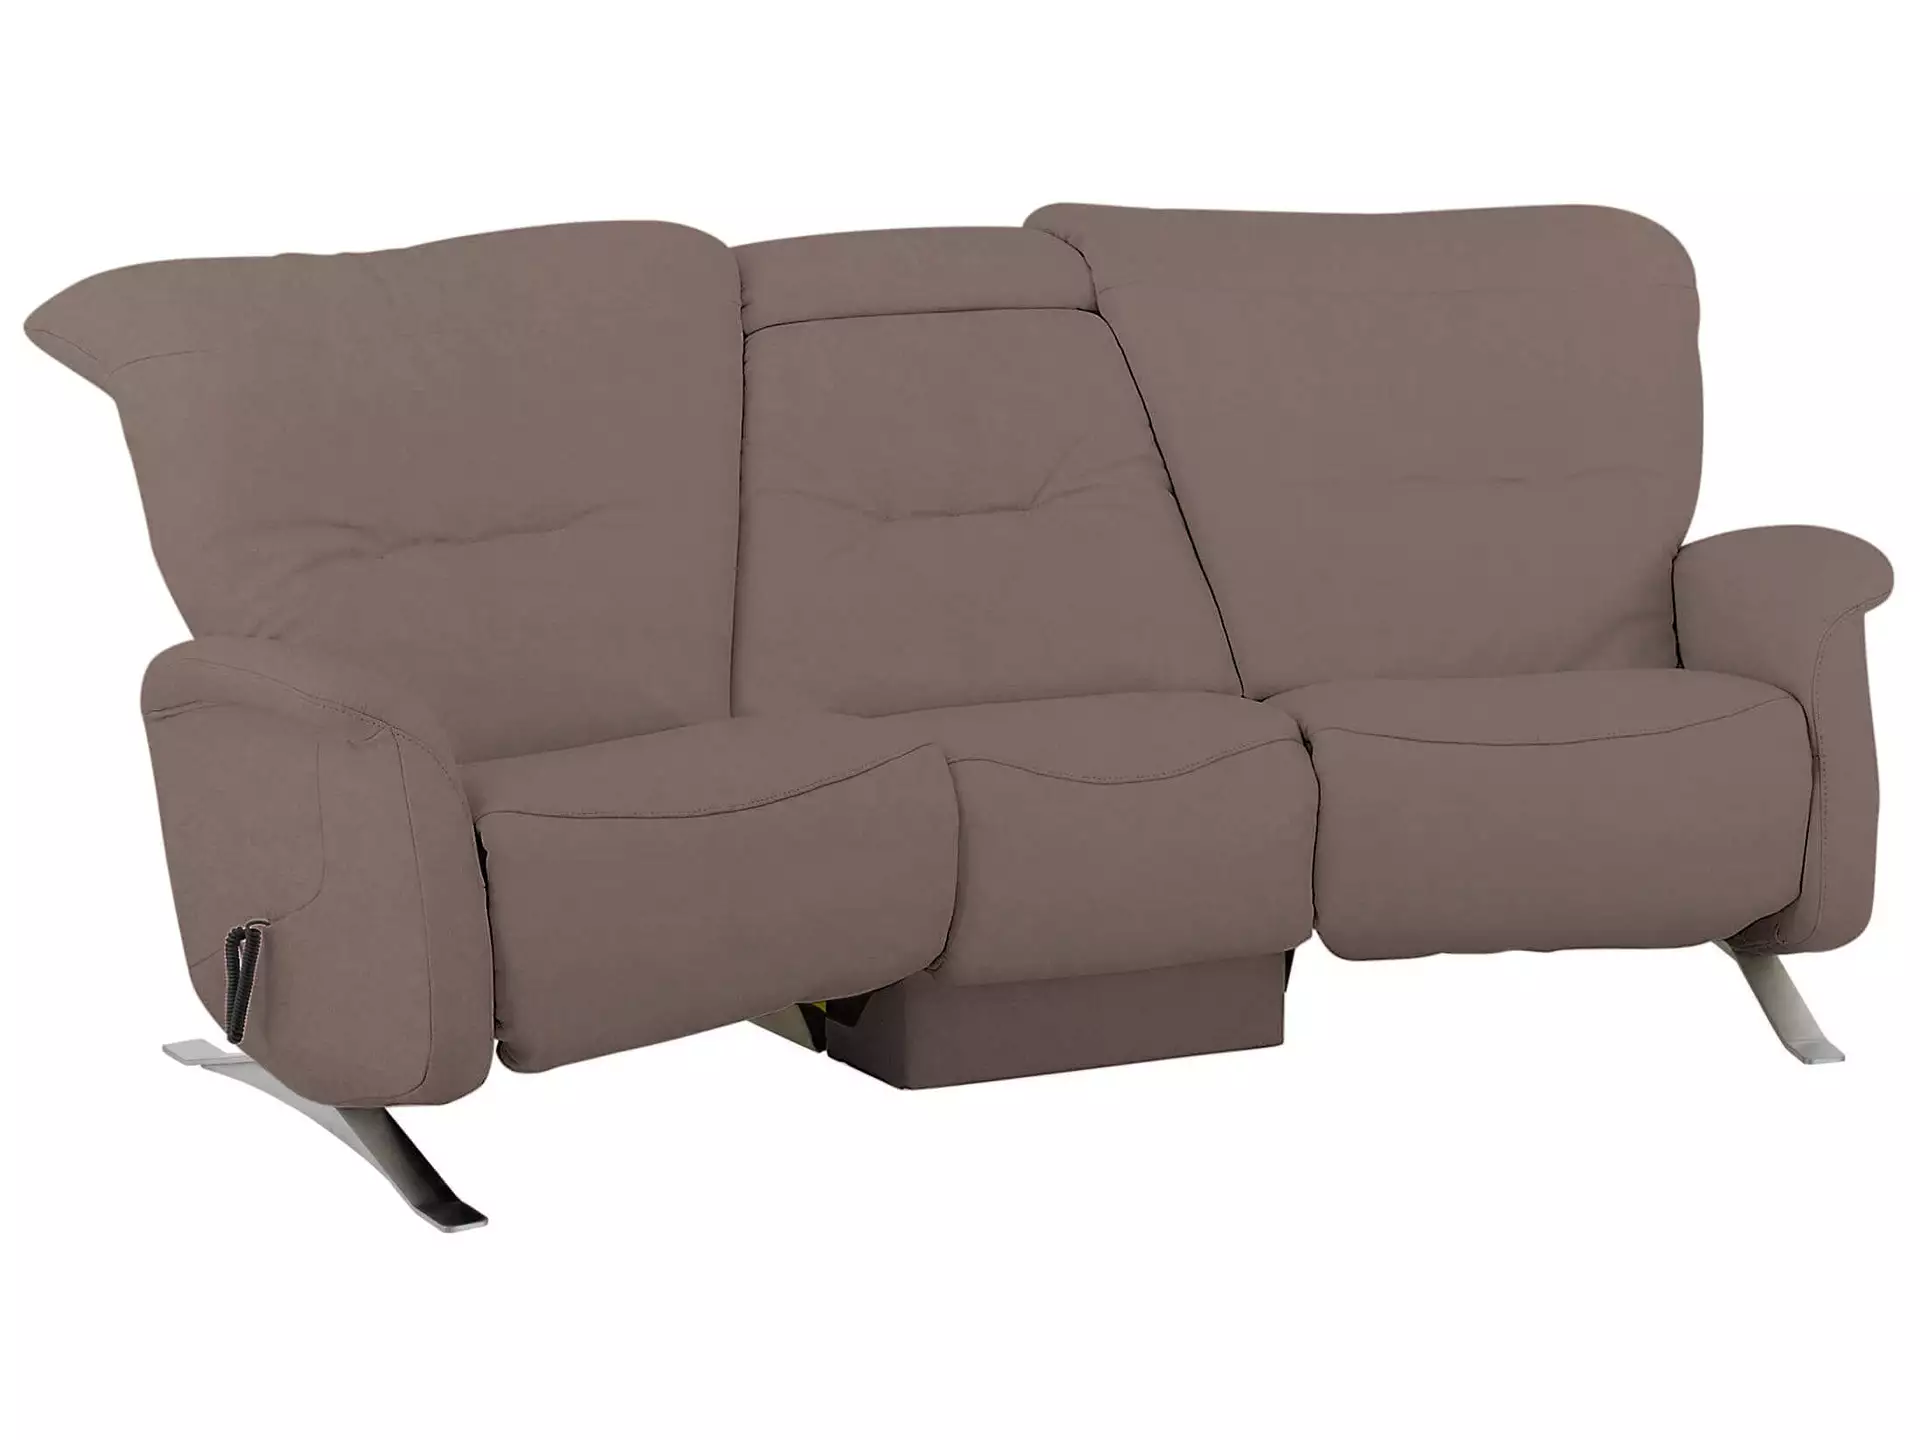 Sofa Calea Basic Himolla / Farbe: Schiefer / Material: Stoff Basic